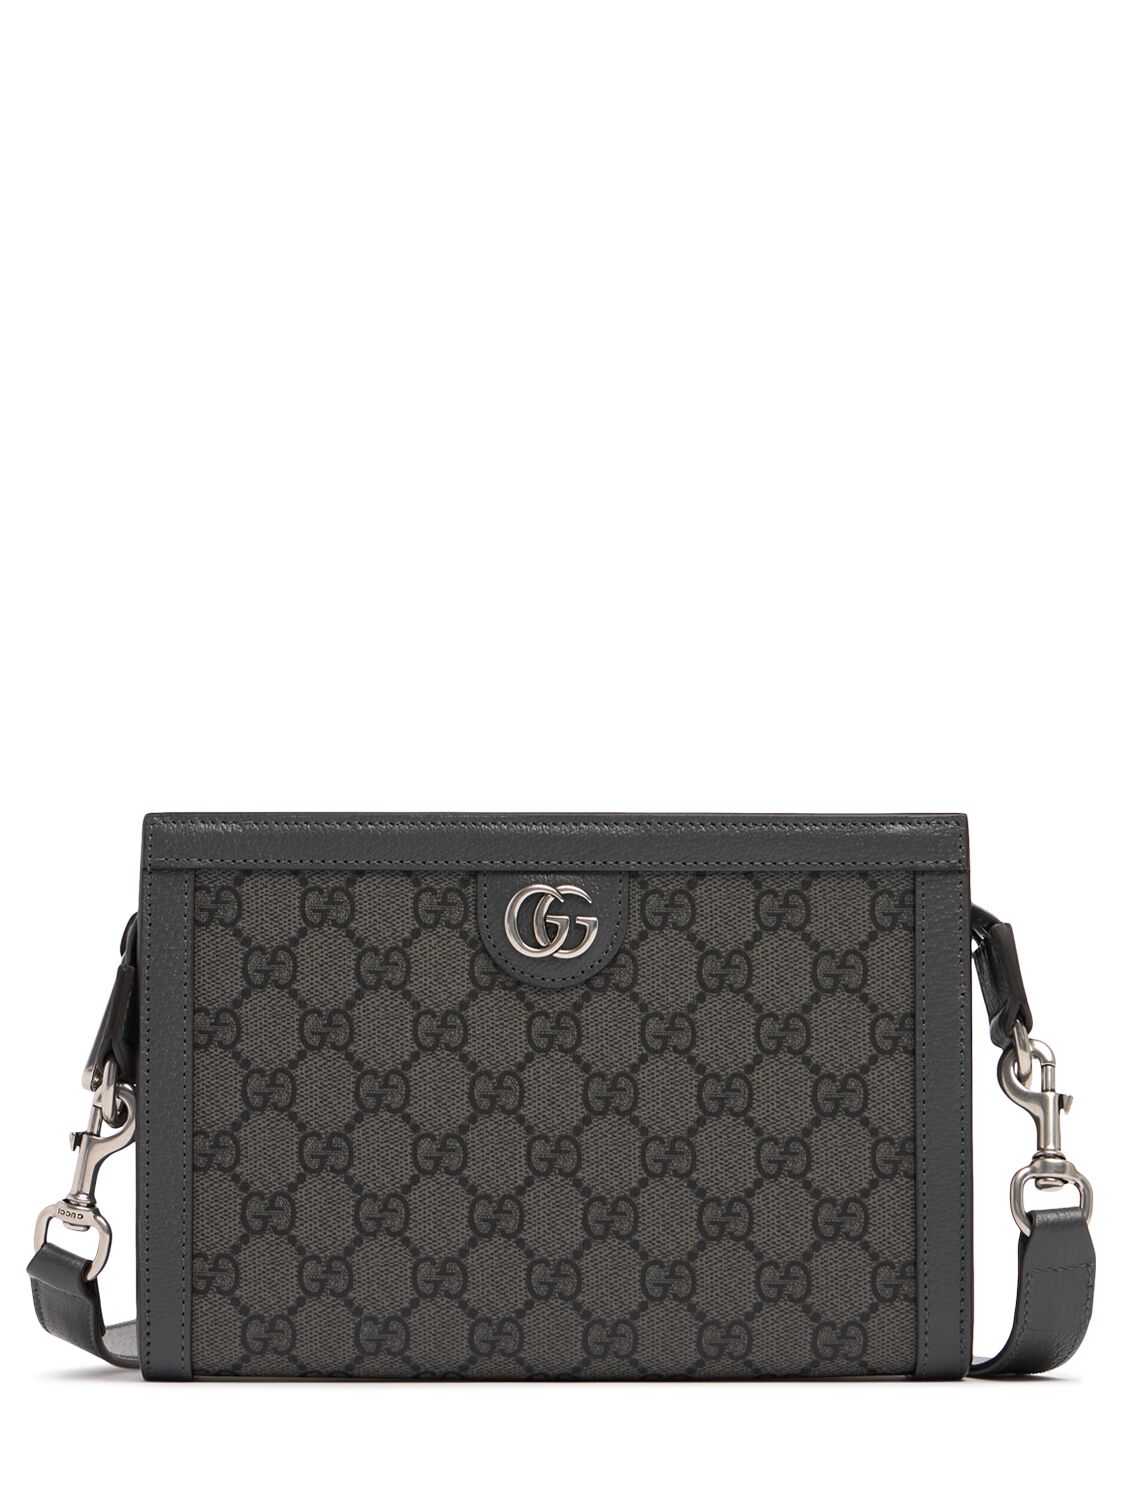 Gucci Ophidia Gg Crossbody Bag In Grey/black